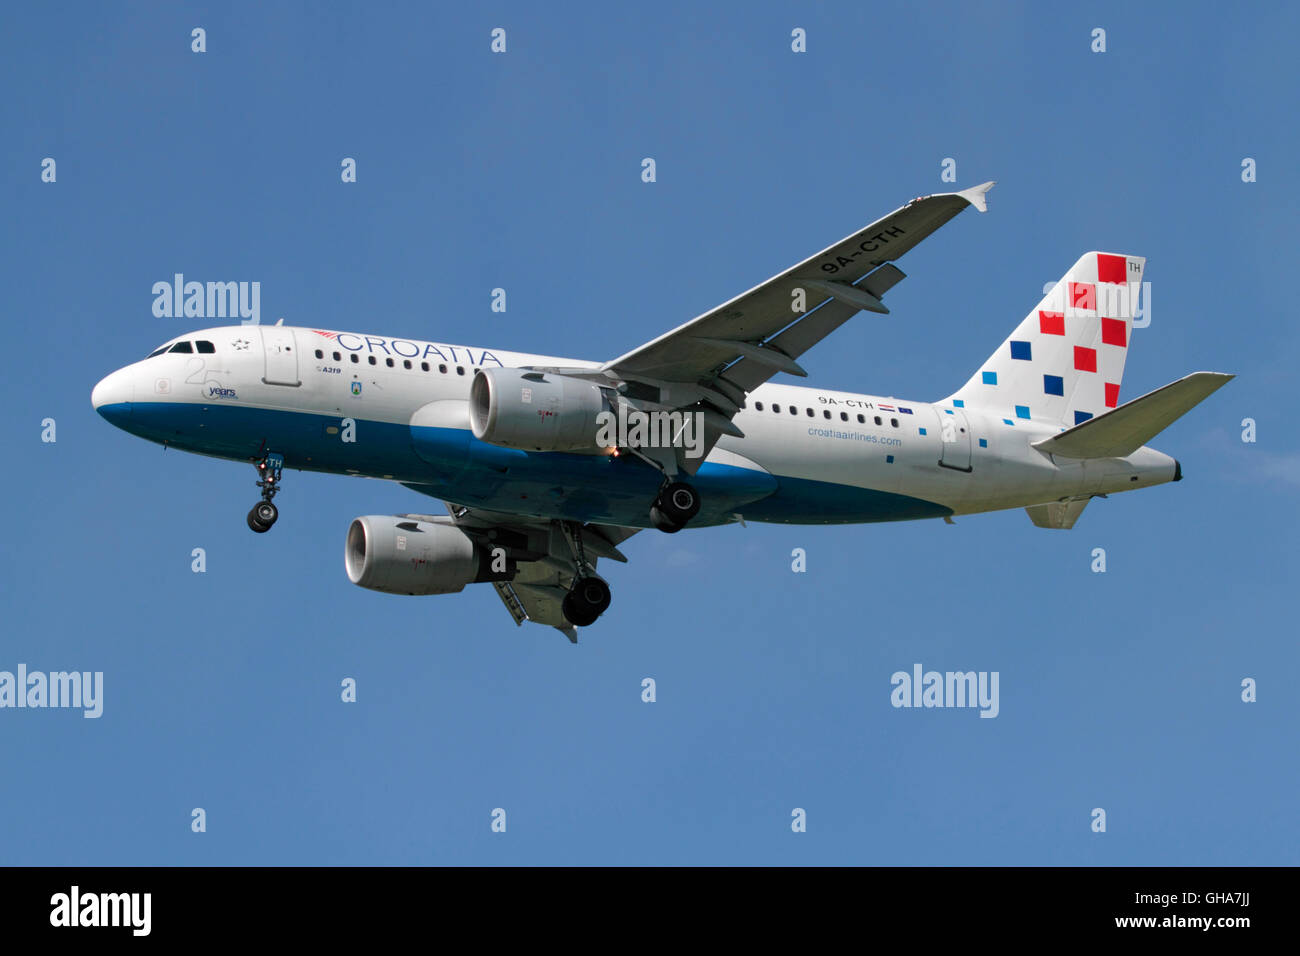 Croatia Airlines Airbus A319 avion de ligne en approche Banque D'Images